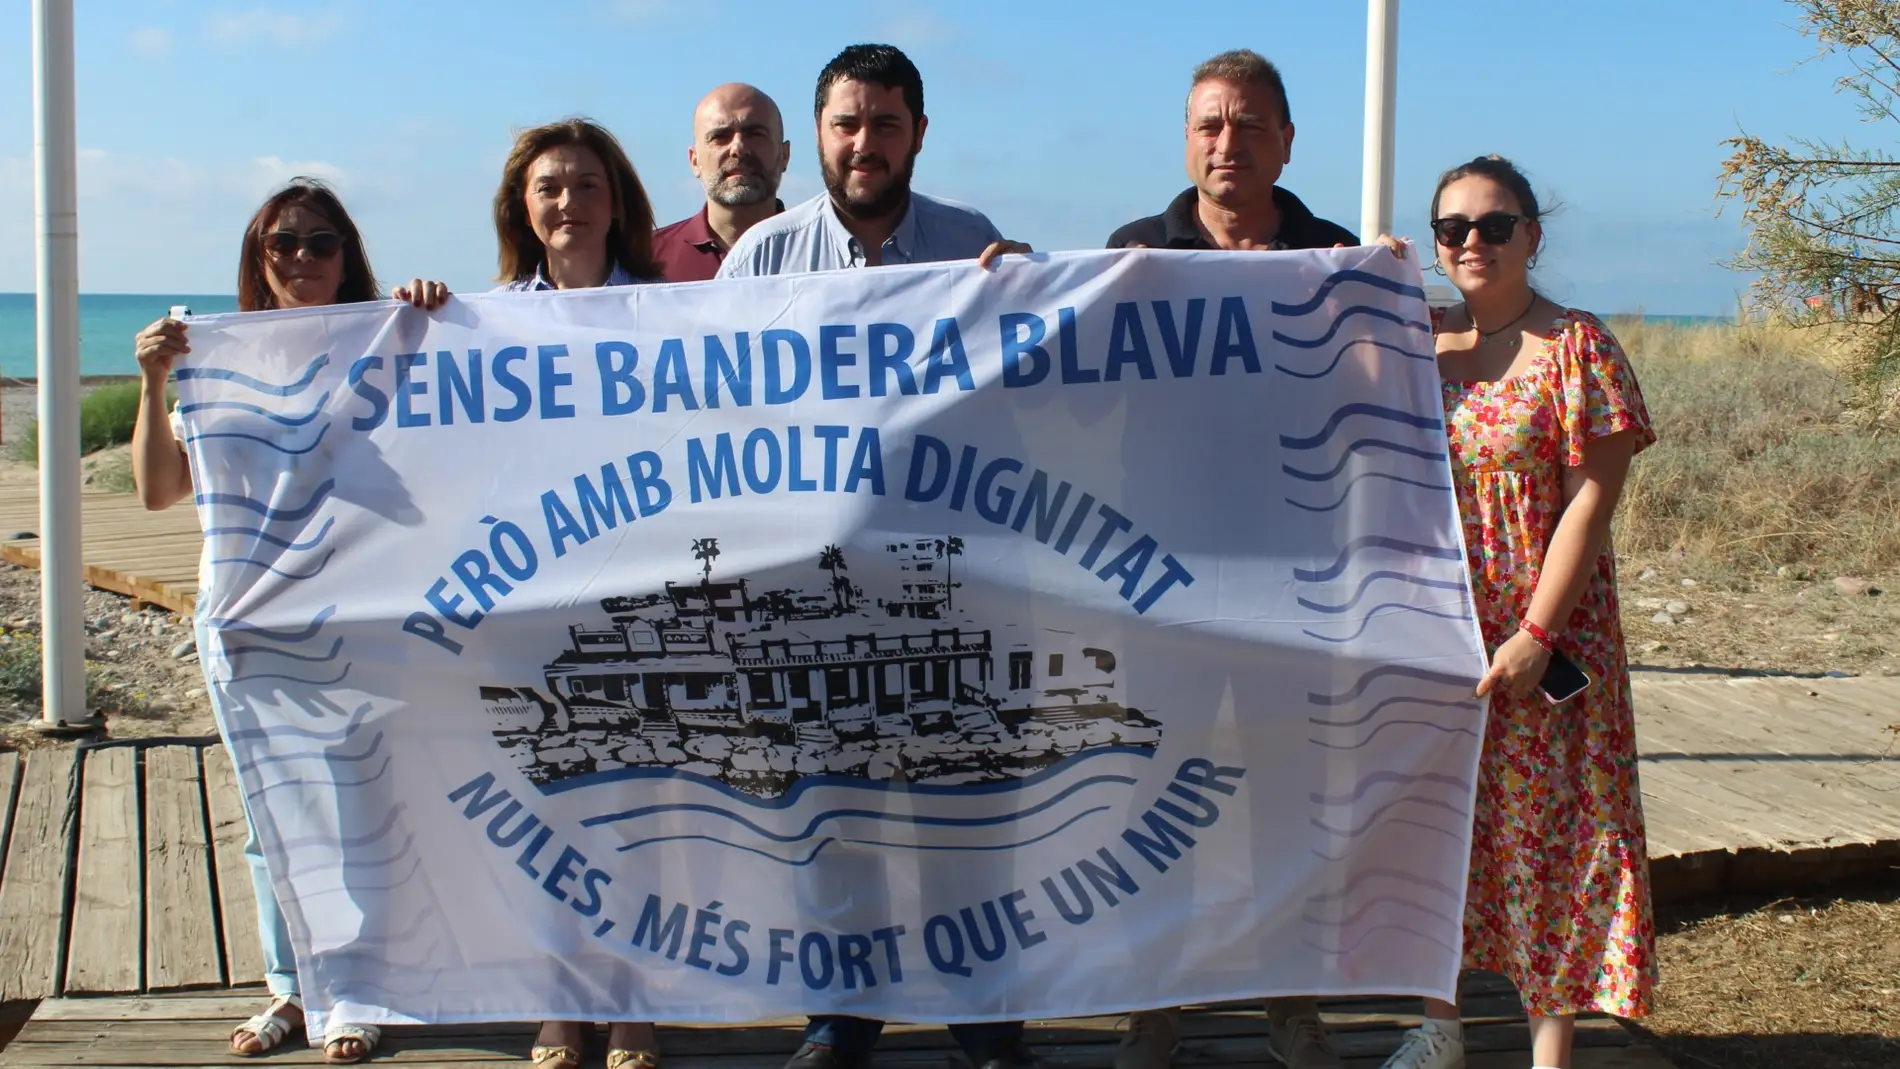 El alcalde de Nules, David García, posando con la bandera reivindicativa en la playa Les Marines